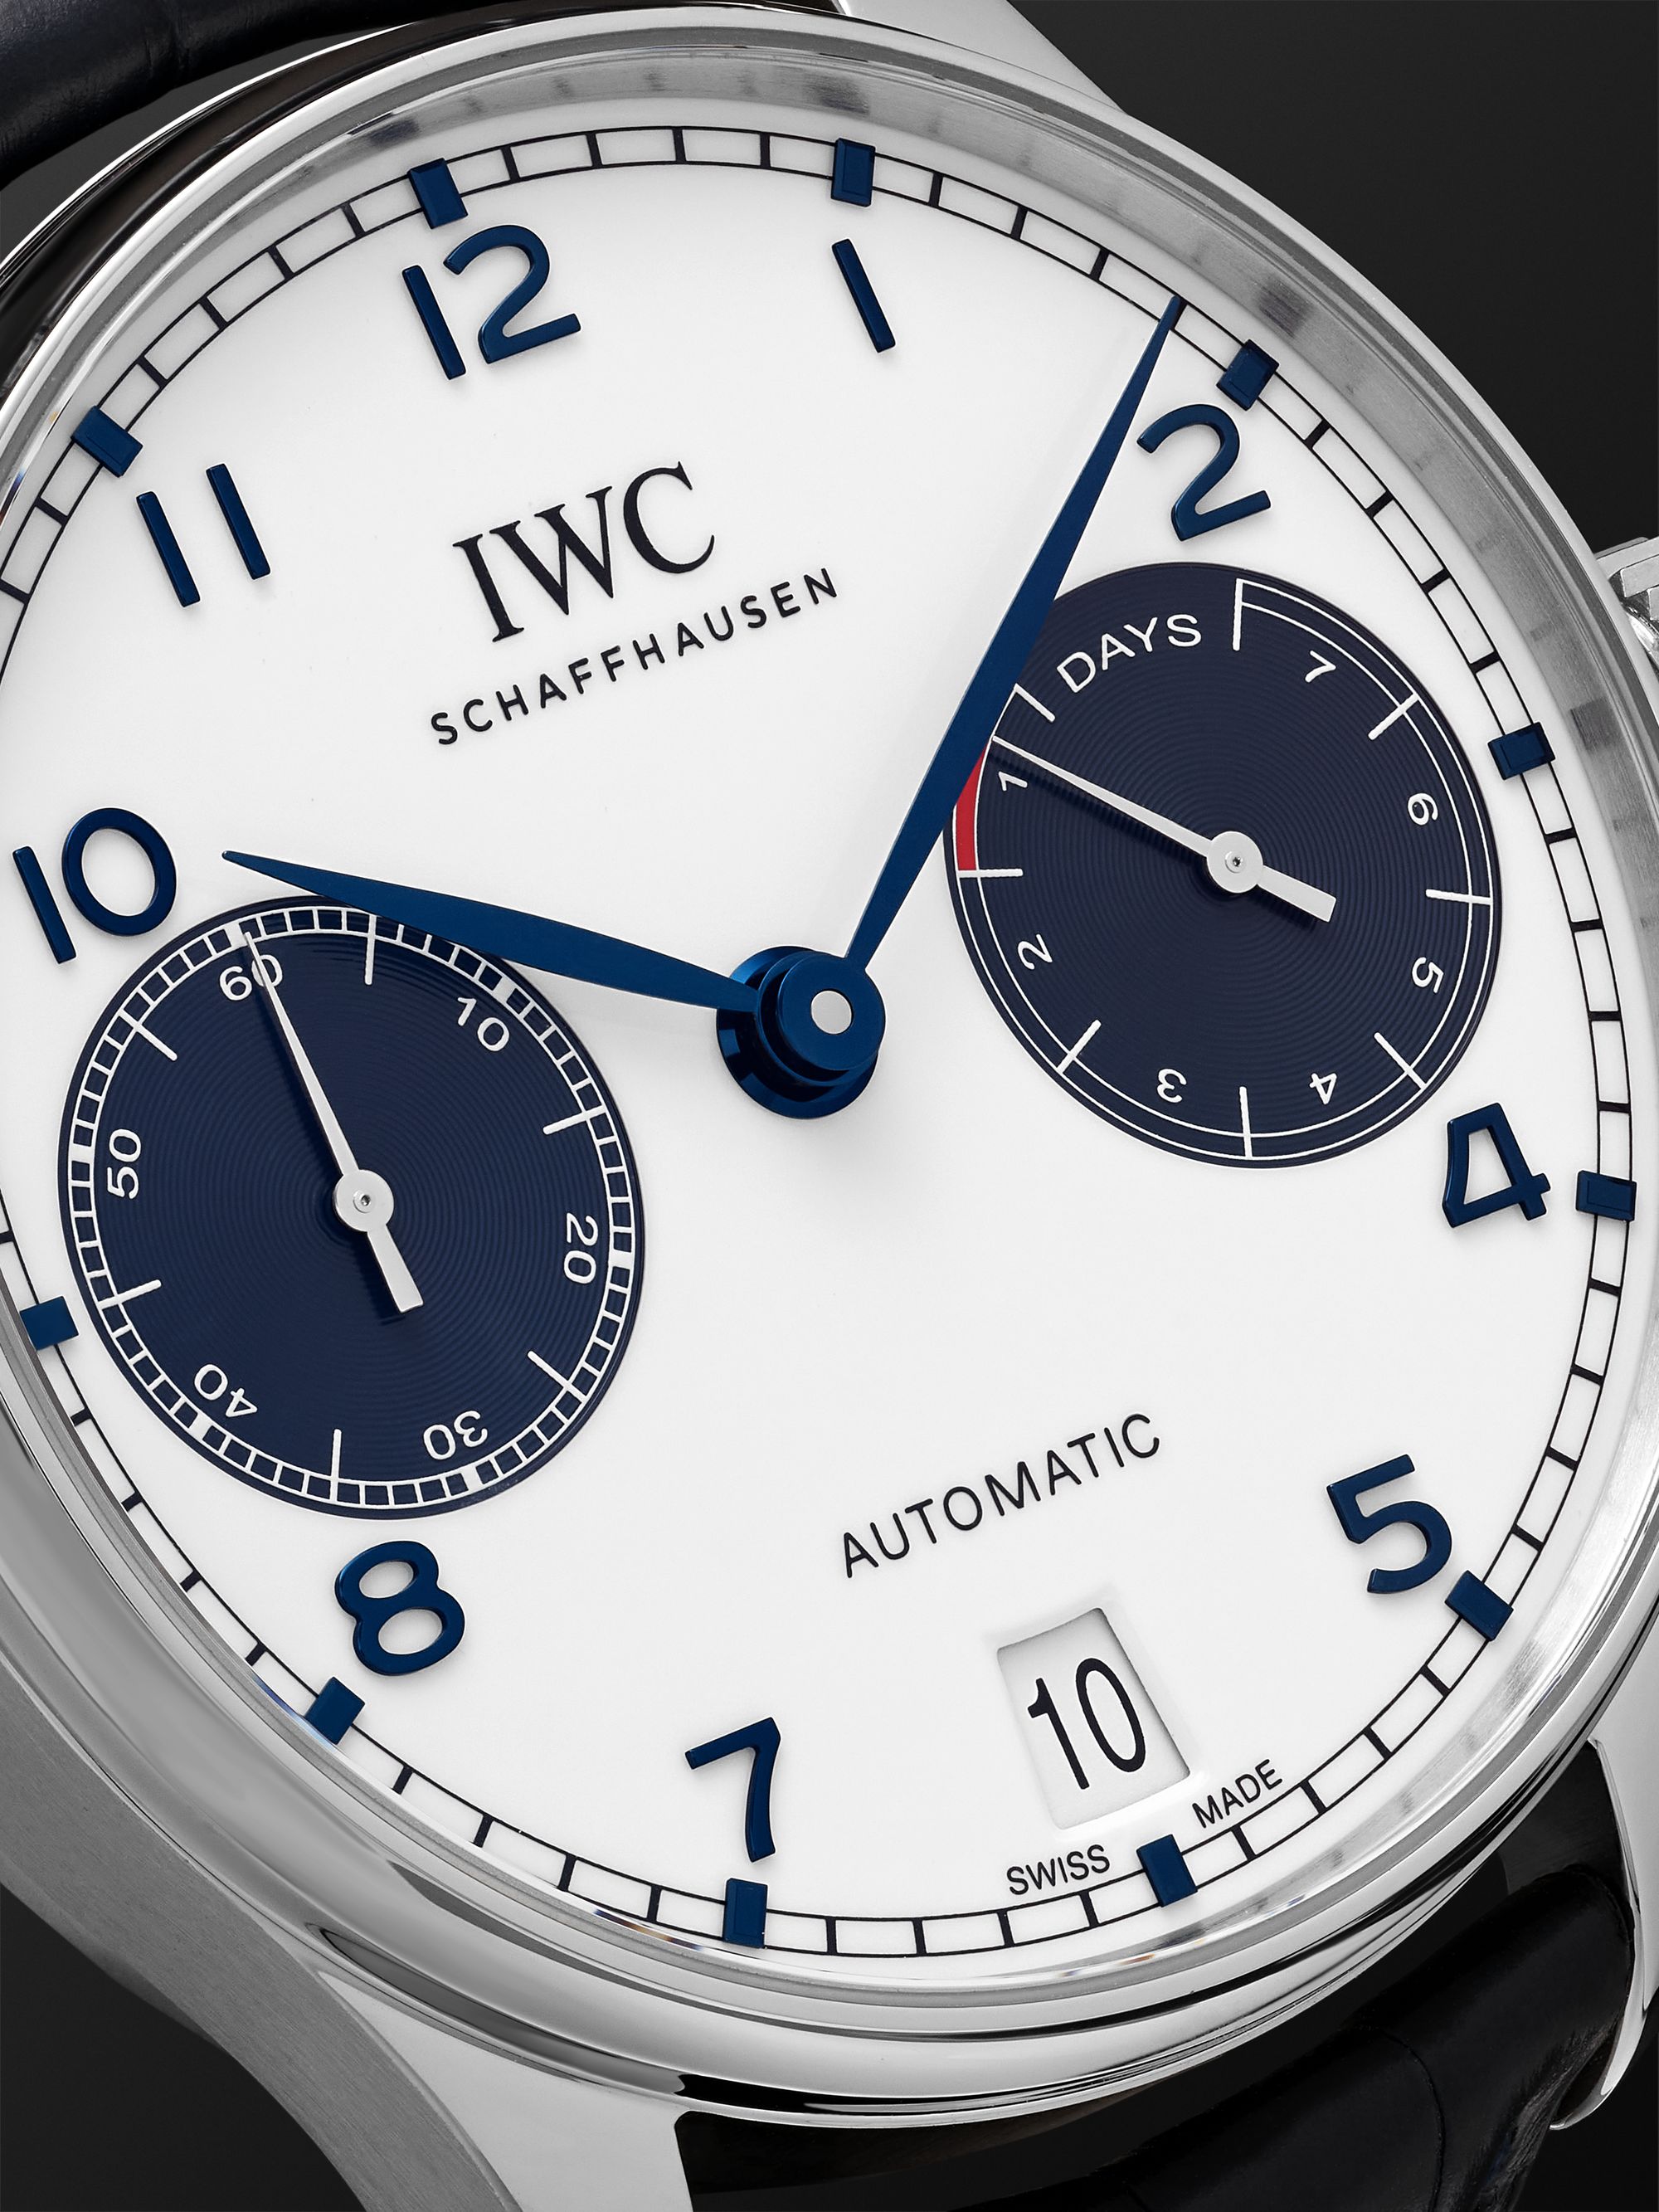 IWC SCHAFFHAUSEN Portugieser Automatic 42.3mm Stainless Steel and Alligator Watch, Ref. No. IW500715